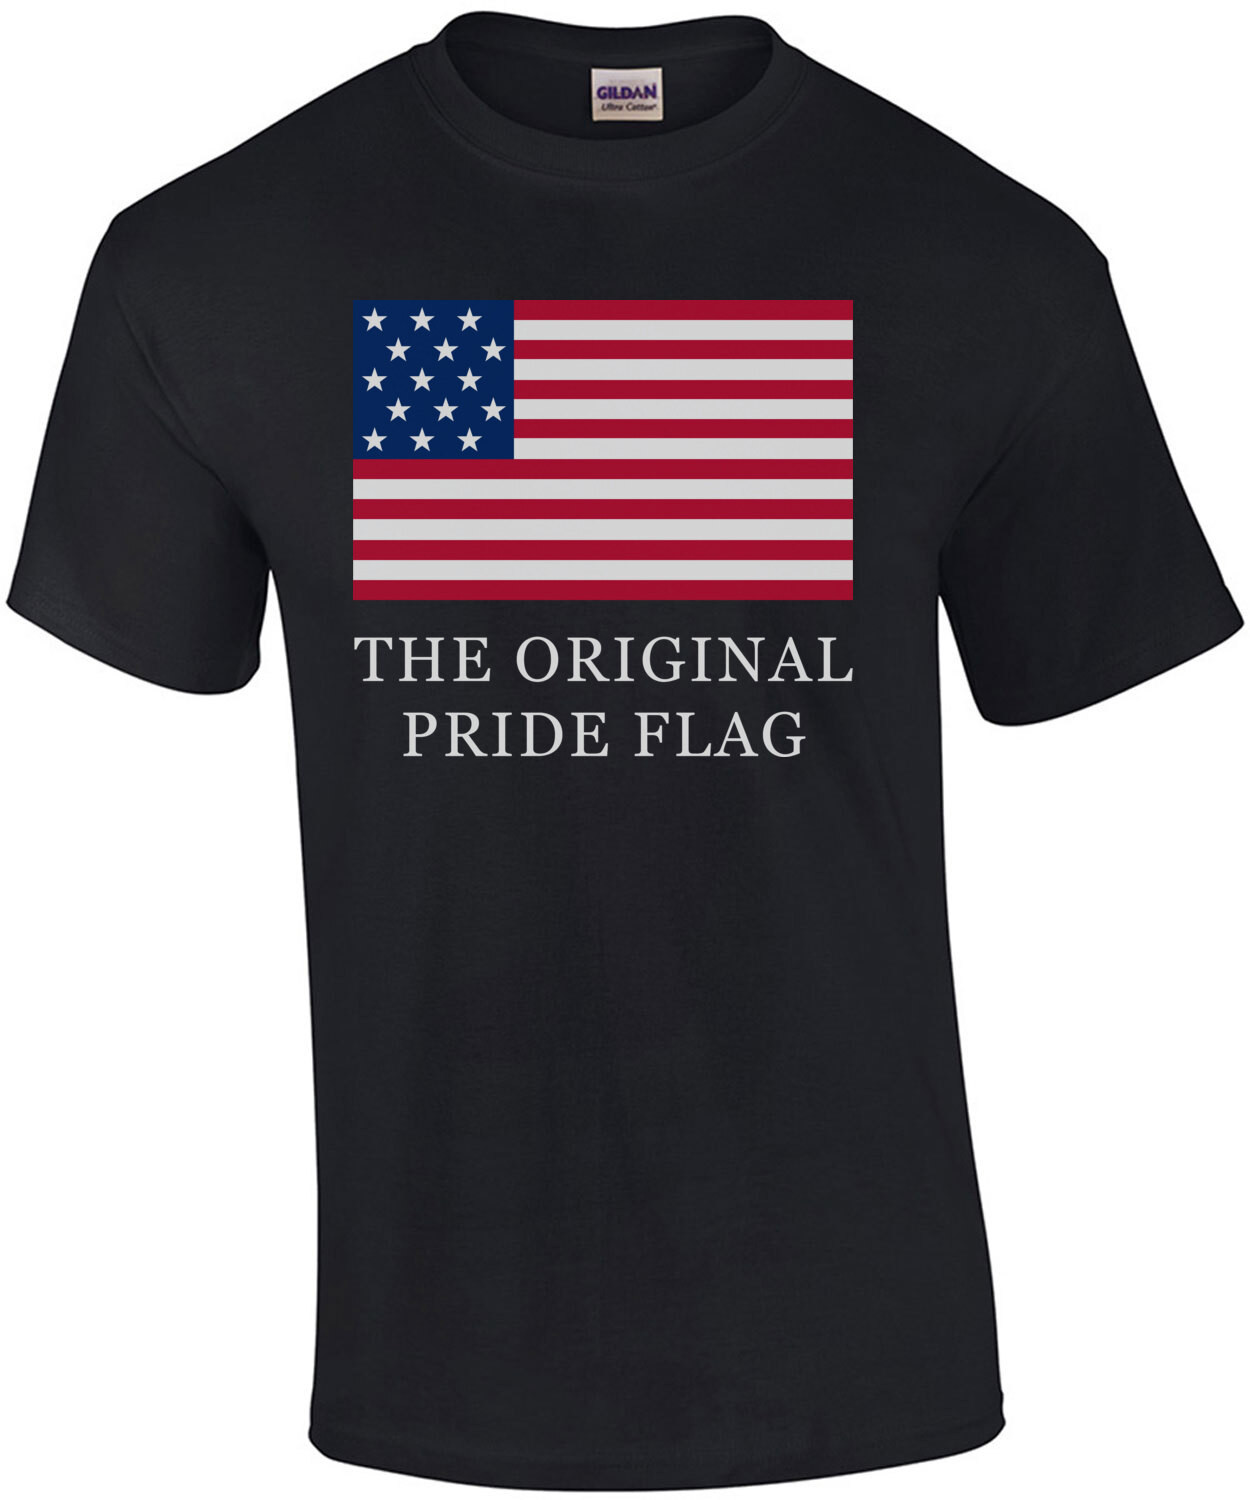 The Original Pride Flag - US T-Shirt